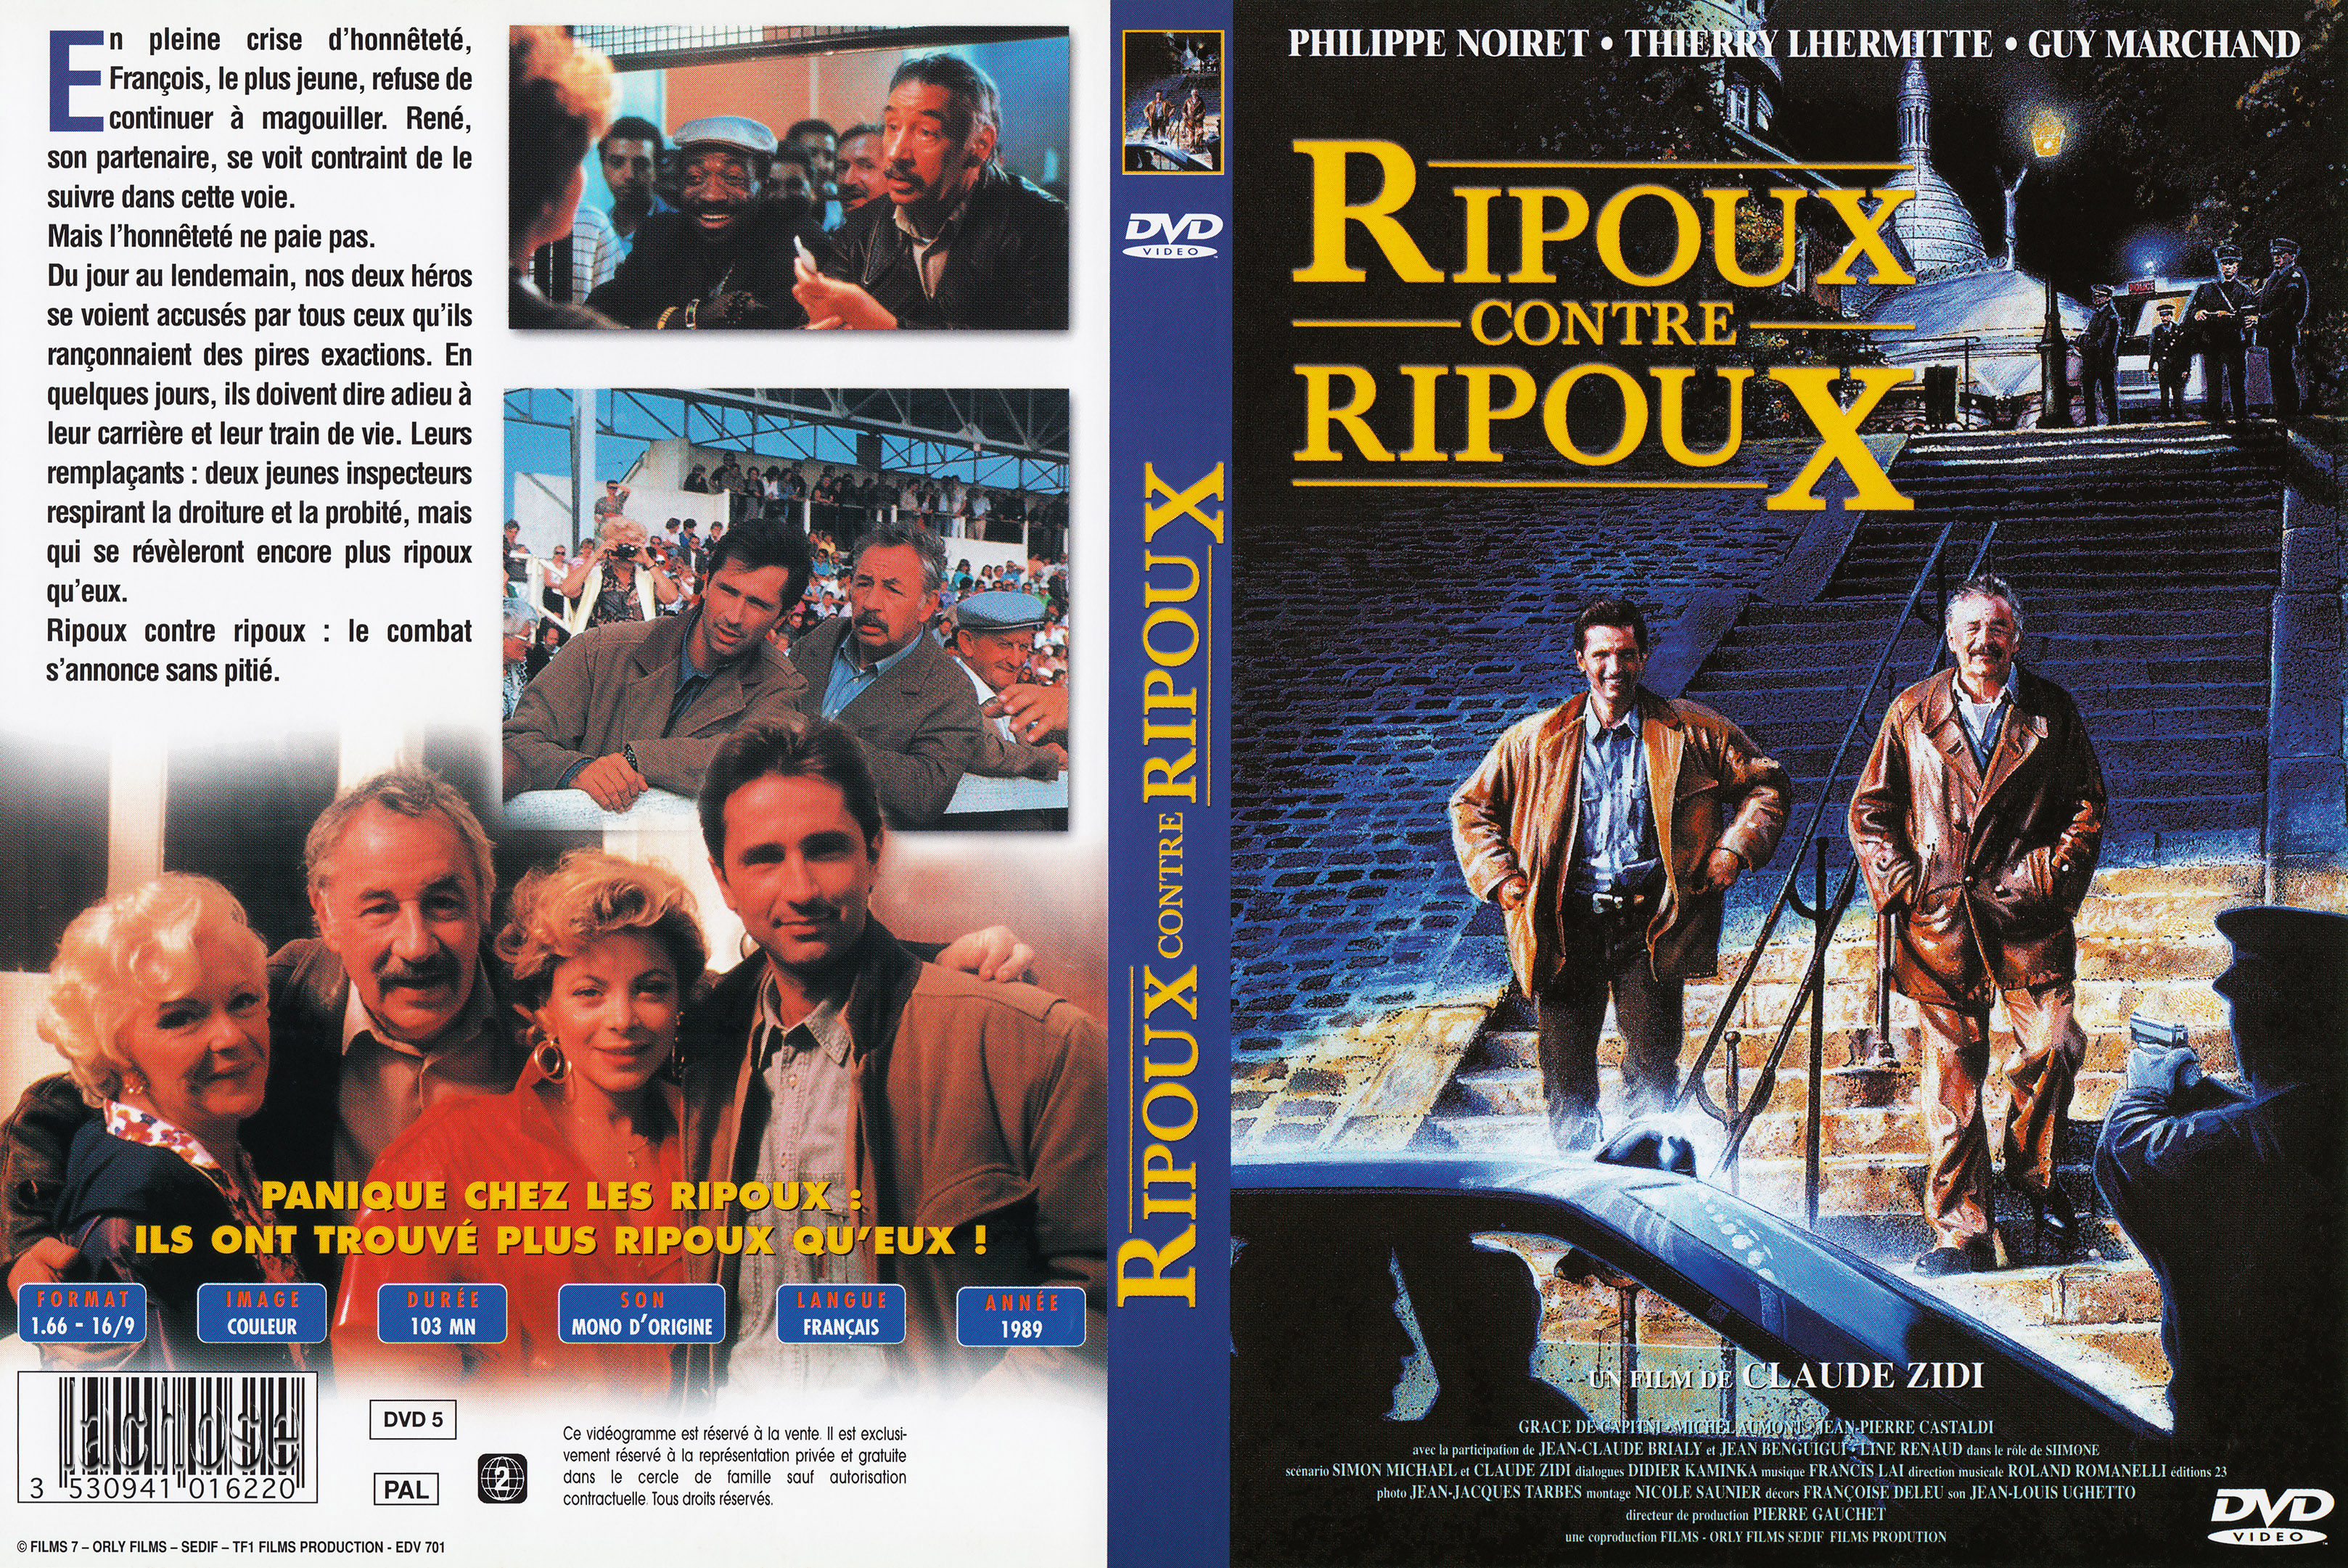 Jaquette DVD Ripoux contre ripoux v3